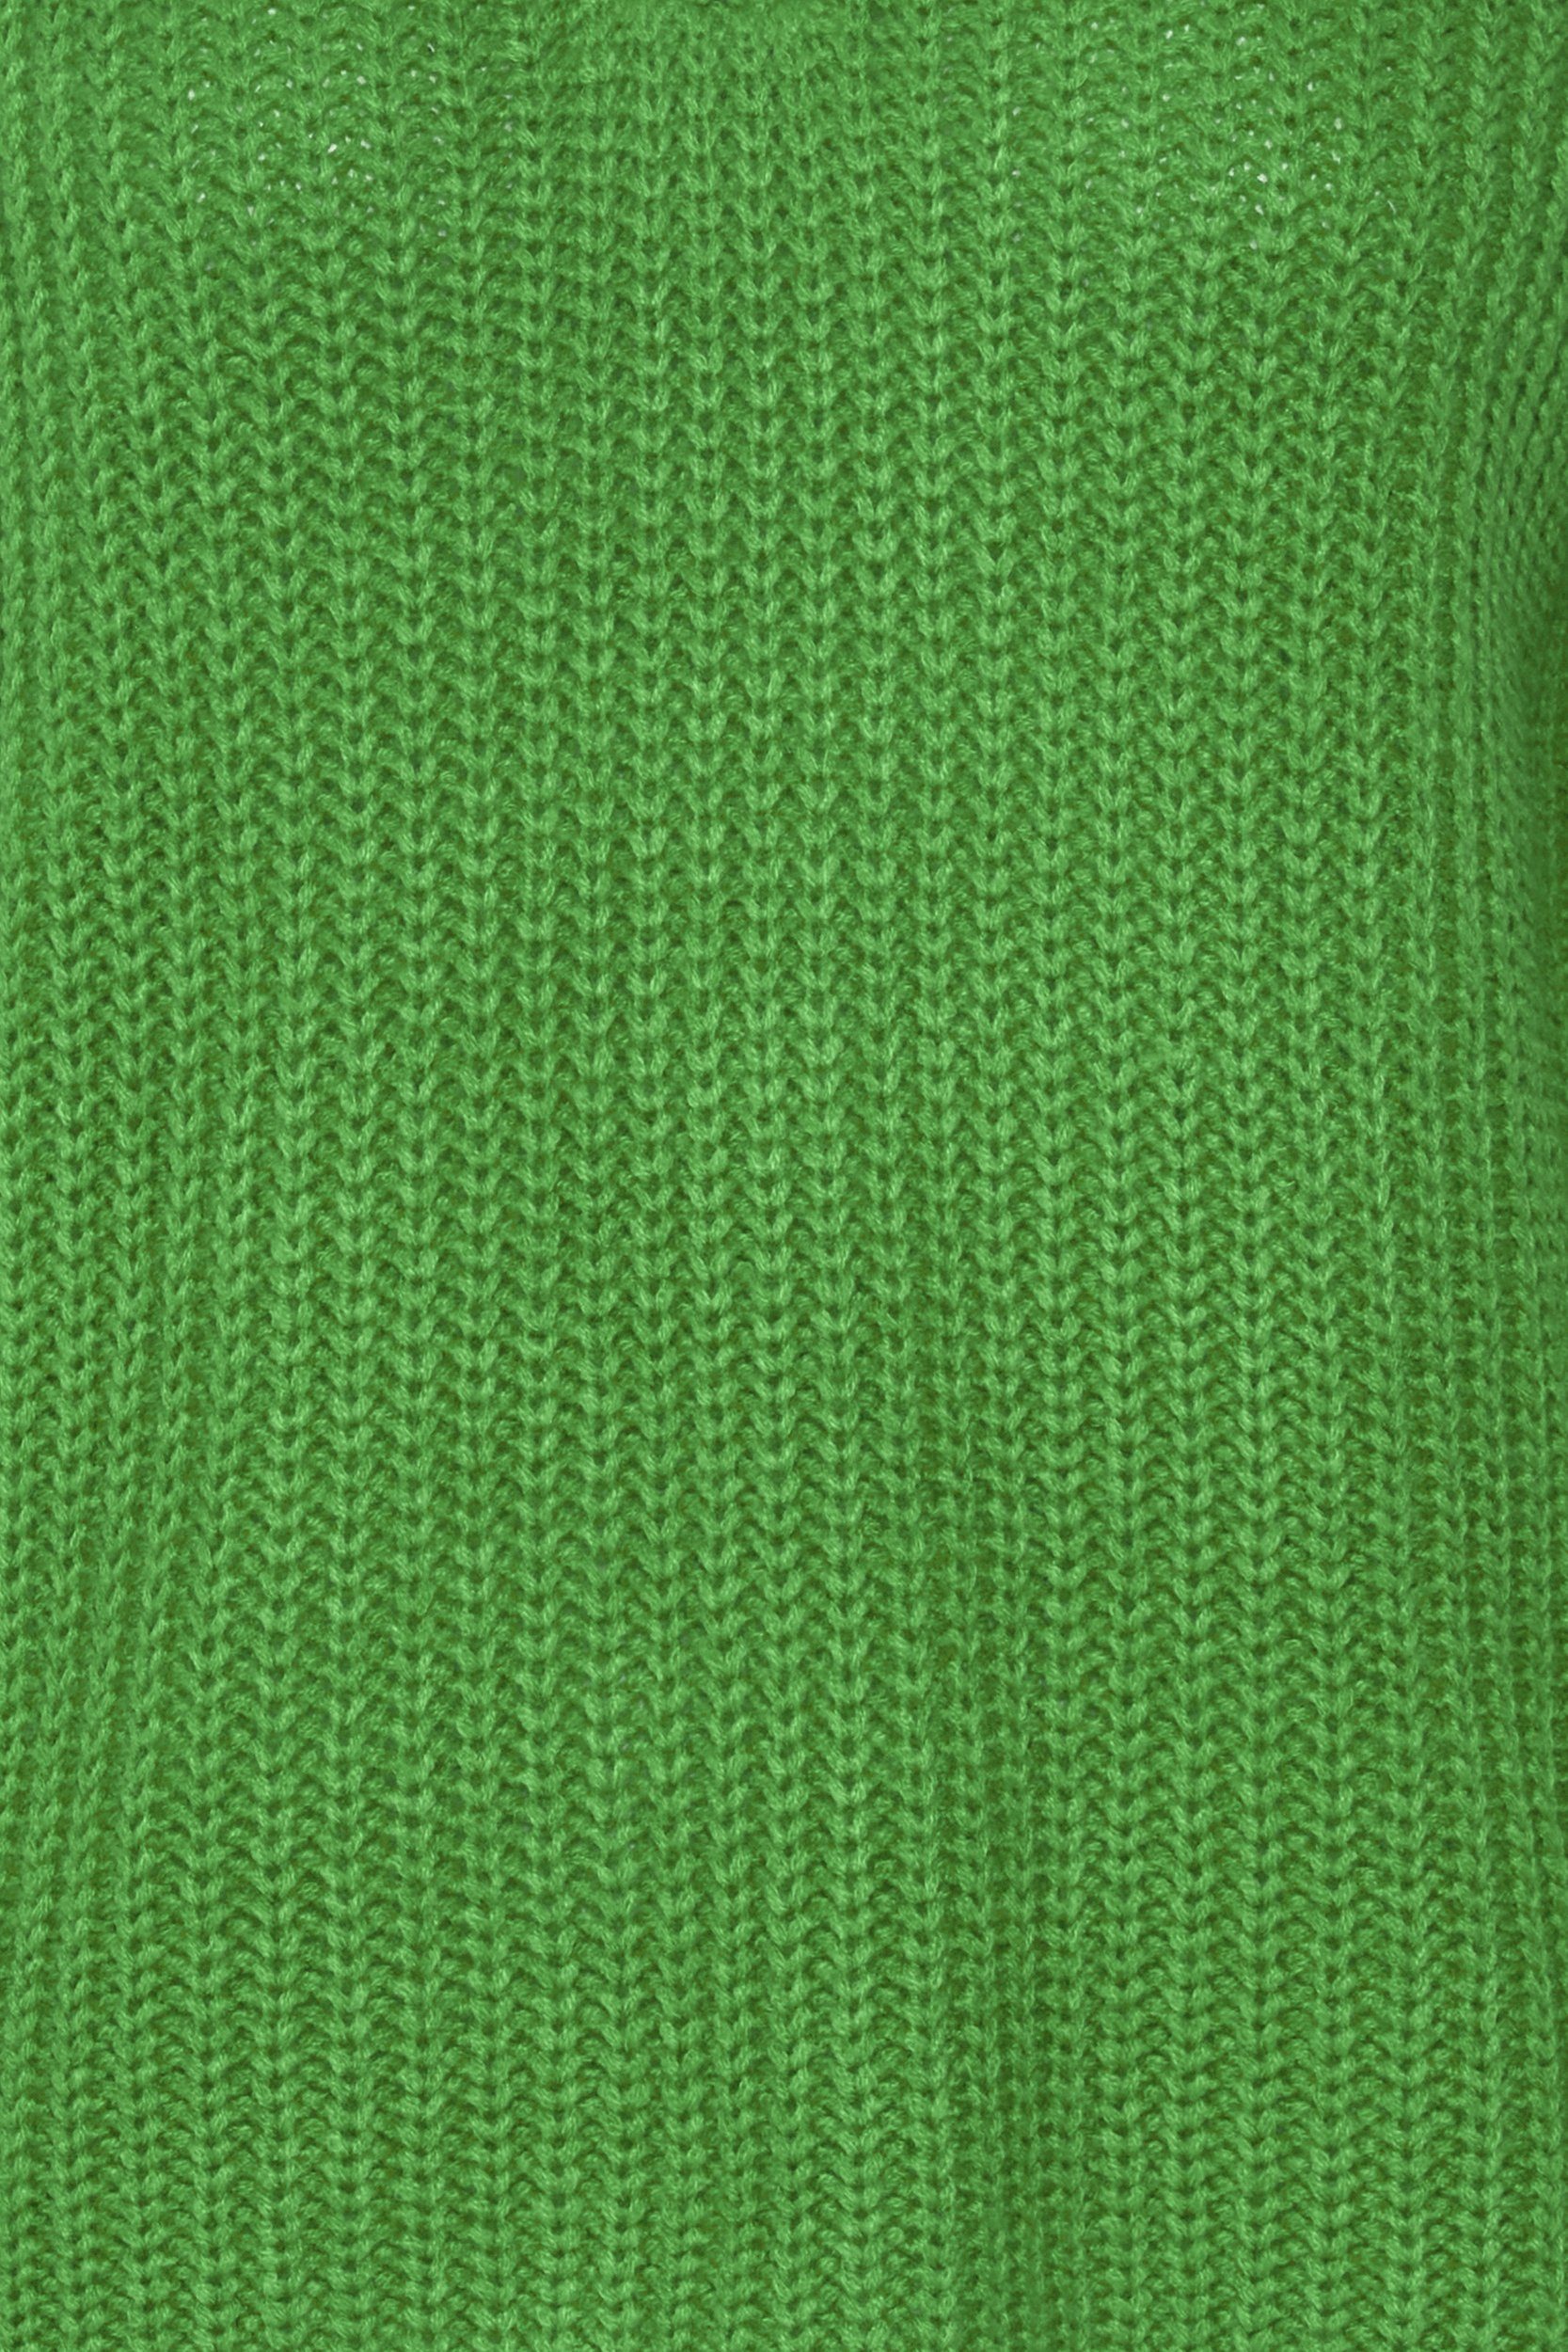 Grobstrick Grün Sweater 6677 Strickpullover Troyer in Reißverschluss mit b.young Kragen Pullover